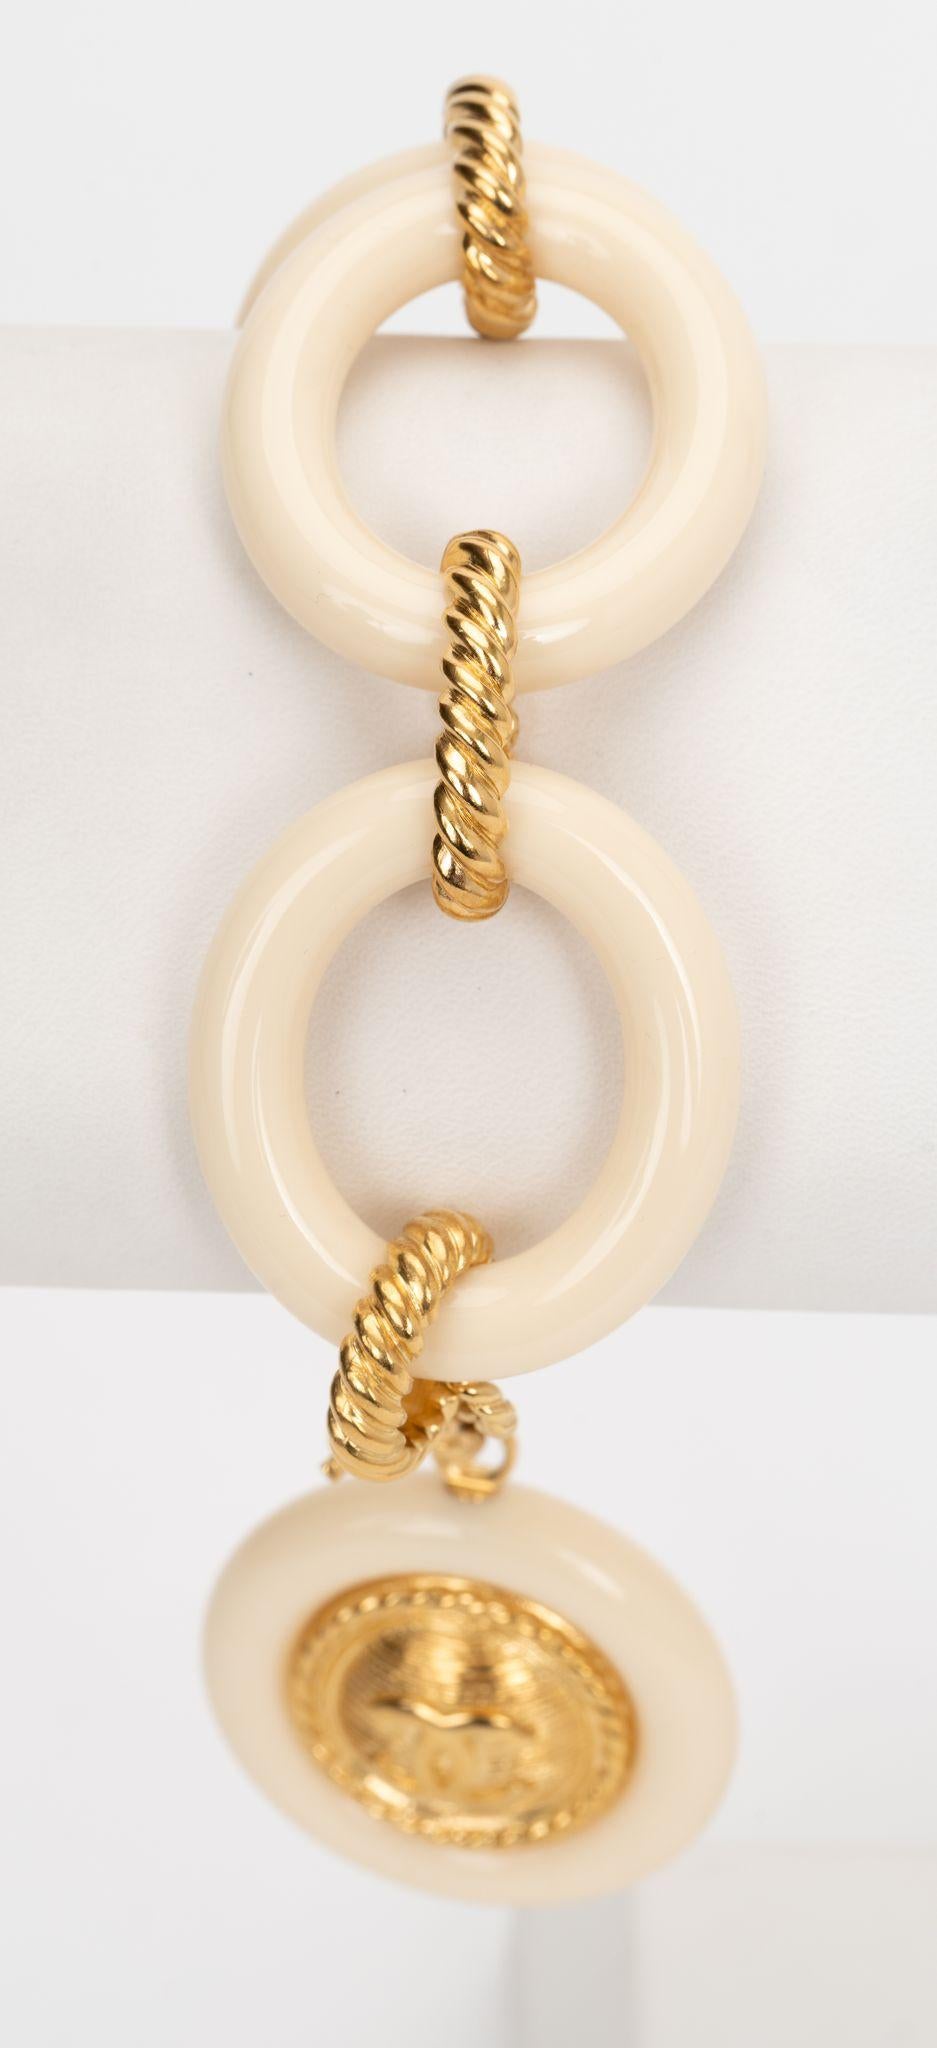 Chanel neues übergroßes Armband mit Charme aus cremefarbenem Kunststoff und goldenem Metall. Ungetragener Zustand. 
Collection'S Herbst 2016.
Kommt mit Booklet und Originalverpackung.